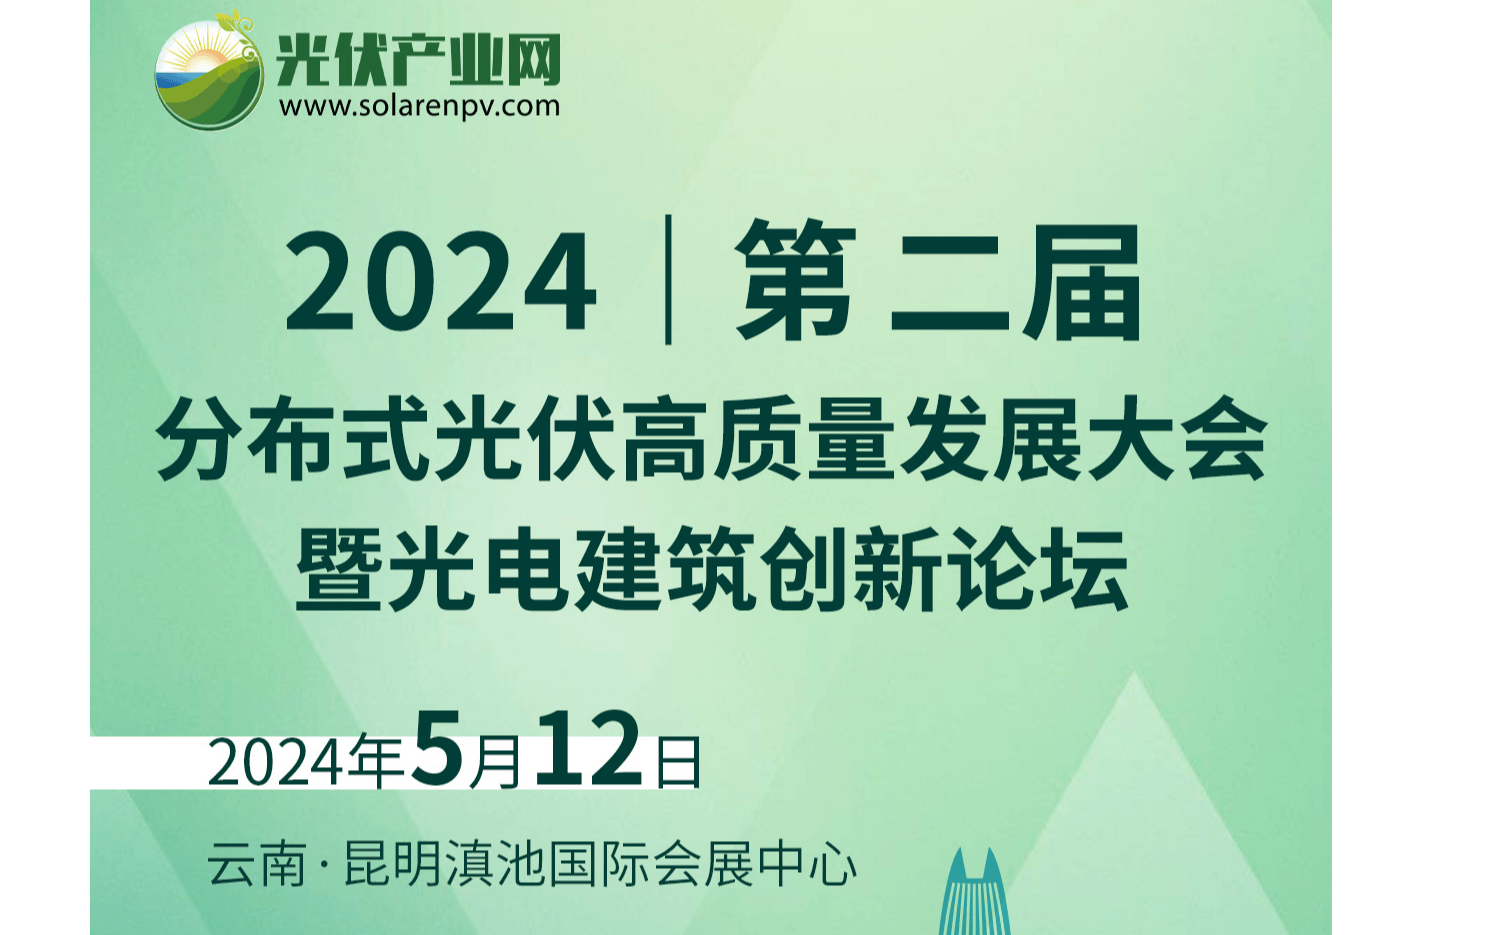 2024年第二届分布式光伏高质量发展大会 暨光电建筑创新论坛